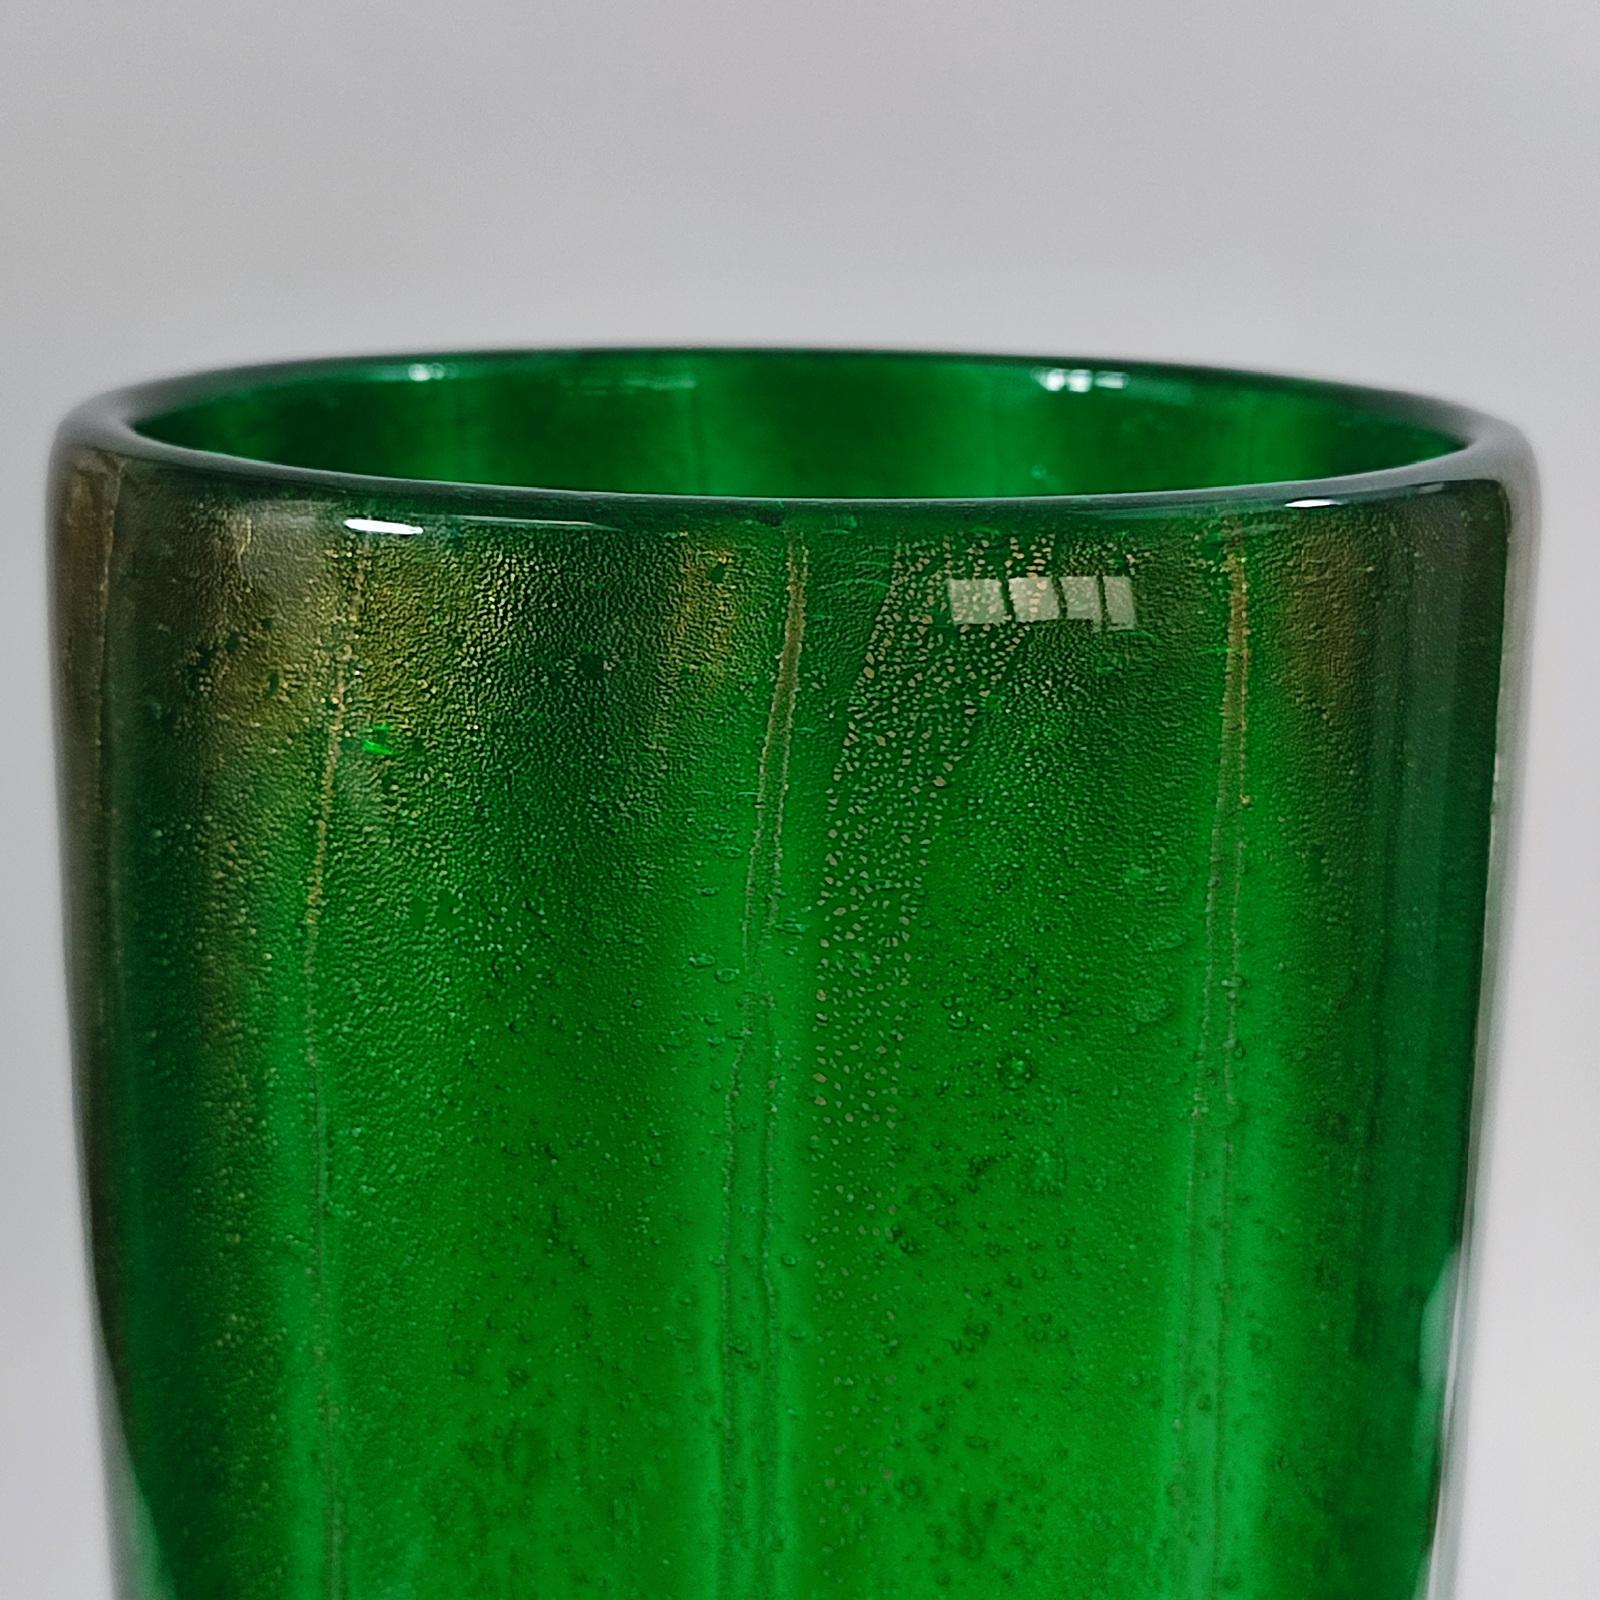 Mid-20th Century Murano Sommerso A Bollicine Vase, designed by Carlo Scarpa for Venini 1930s For Sale